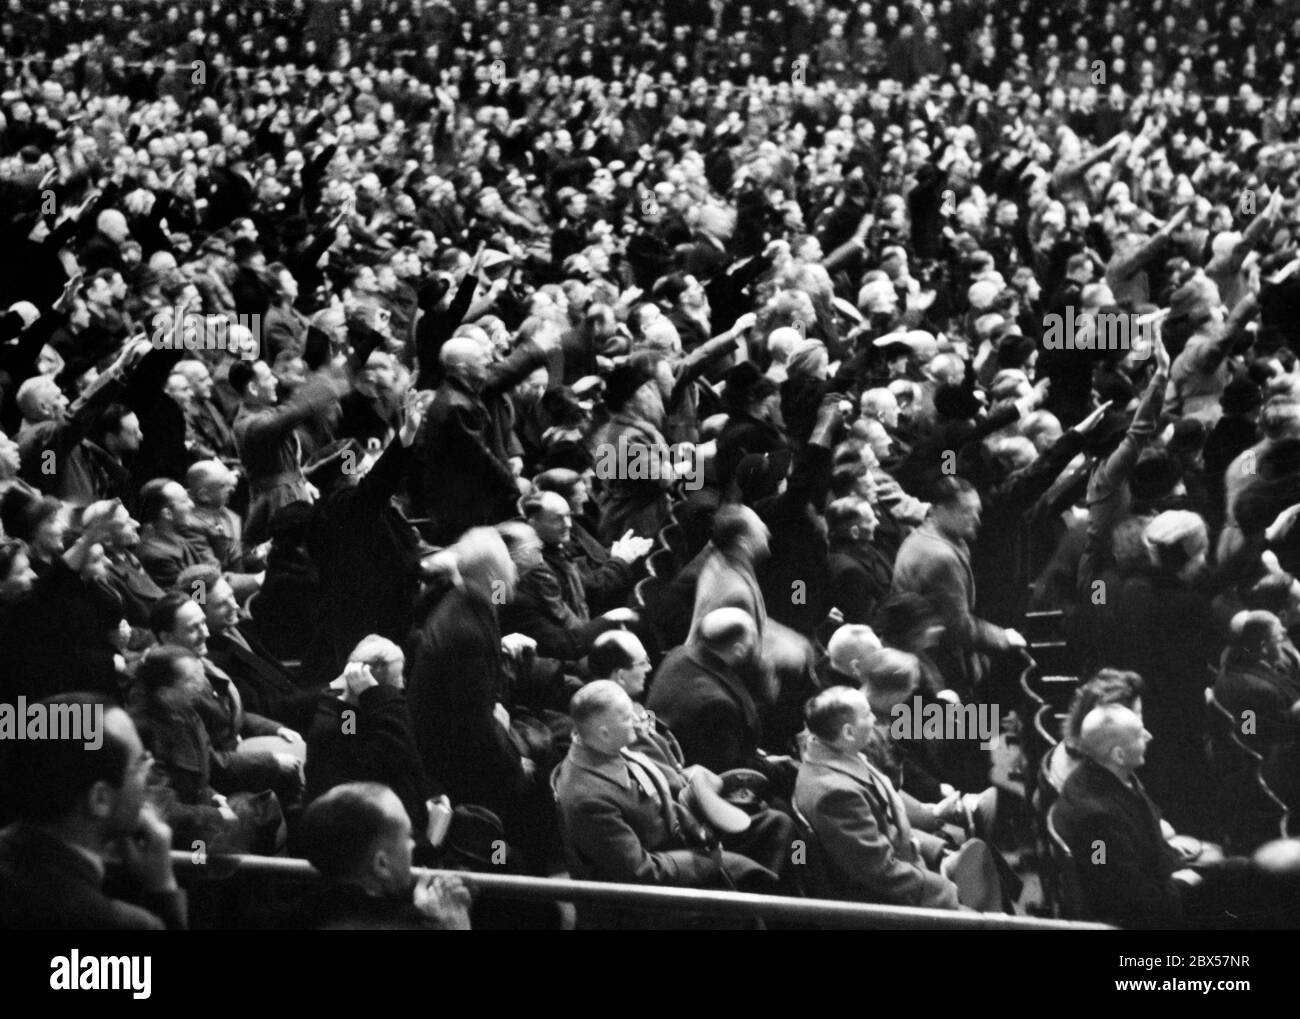 Nach der demagogischen Rede des Reichsministers für Propaganda Joseph Goebbels mit den berühmten Worten "Willst du totalen Krieg?", stehen einige der Anwesenden auf, um ihr Engagement mit dem Nazi-Gruß zu bekräftigen. Foto: Schwahn Stockfoto